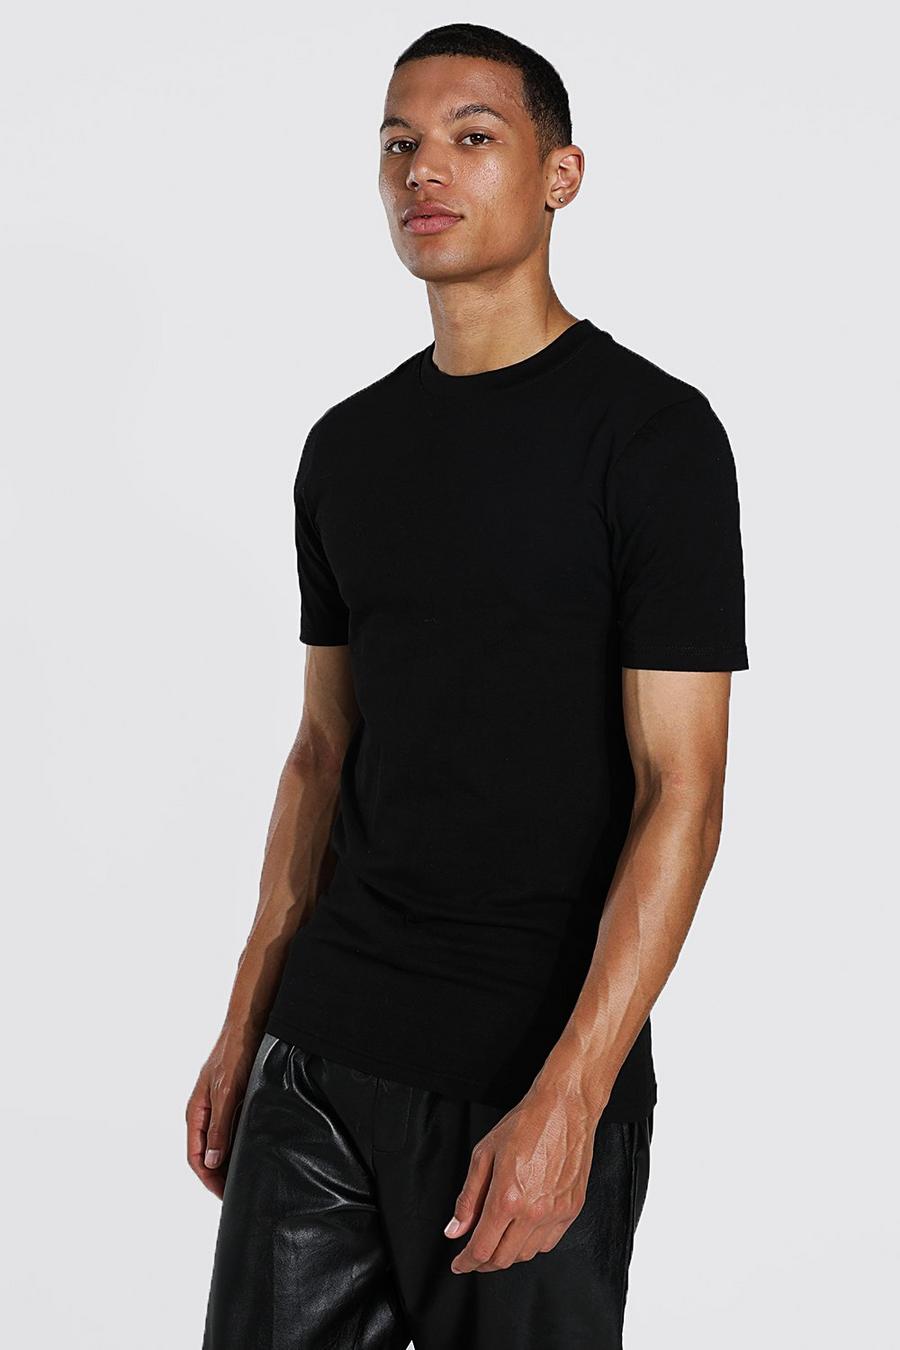 Camiseta Tall MAN ajustada al músculo, Black nero